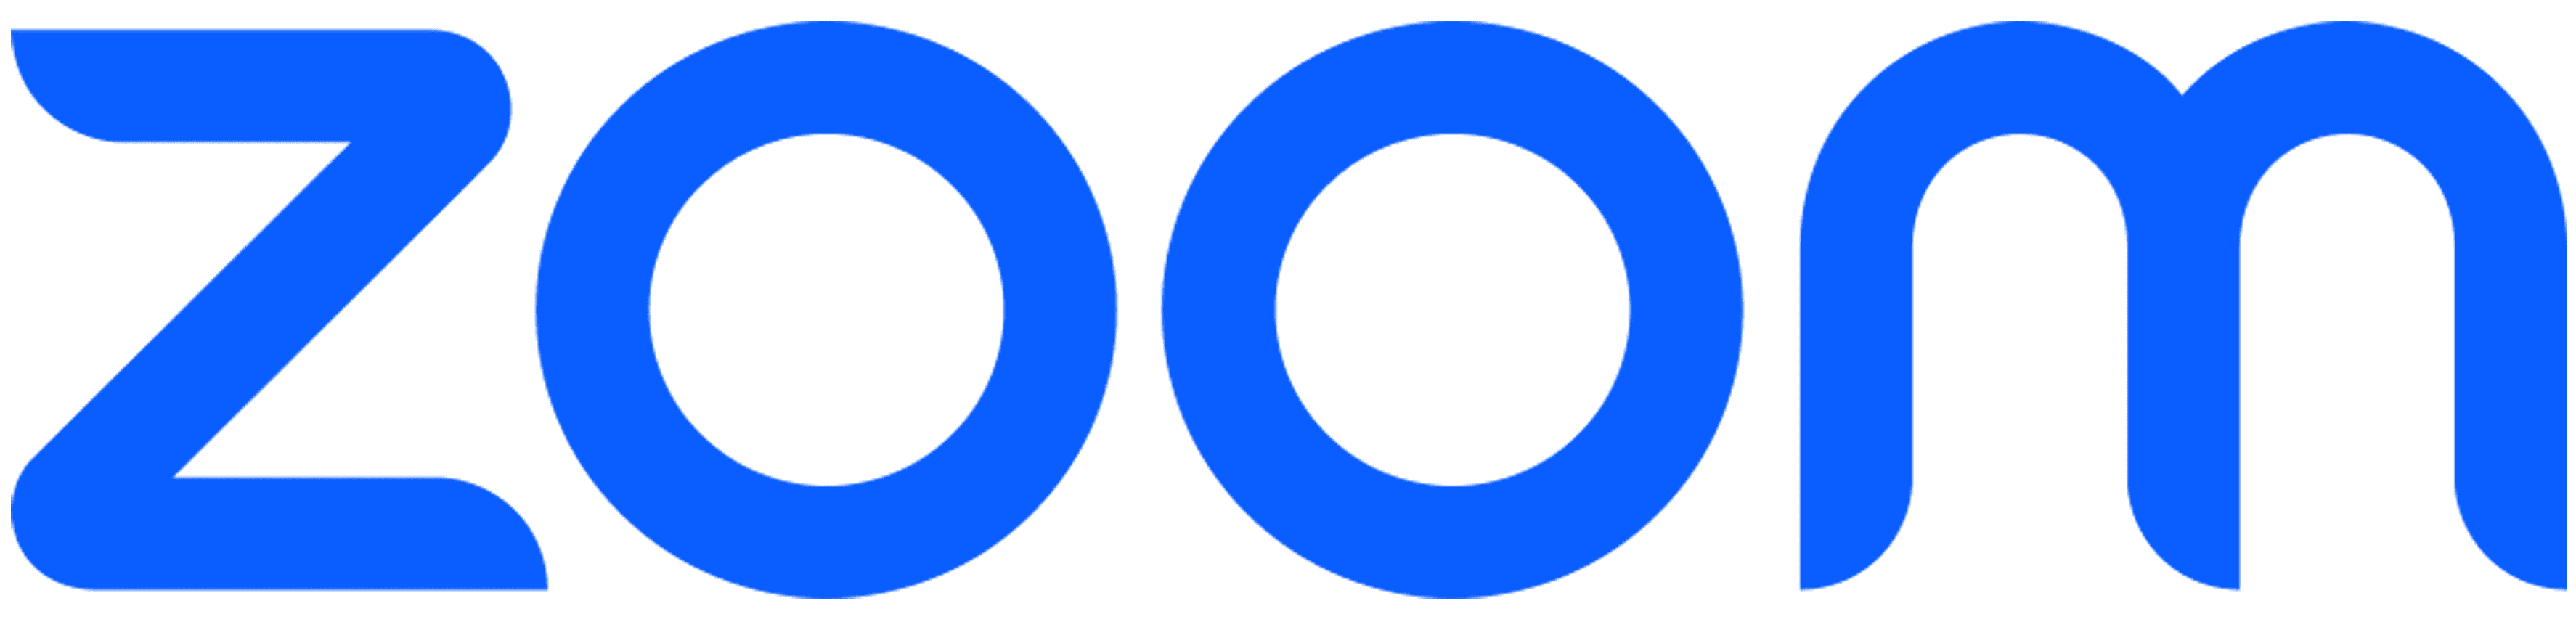 Zoom vendor logo